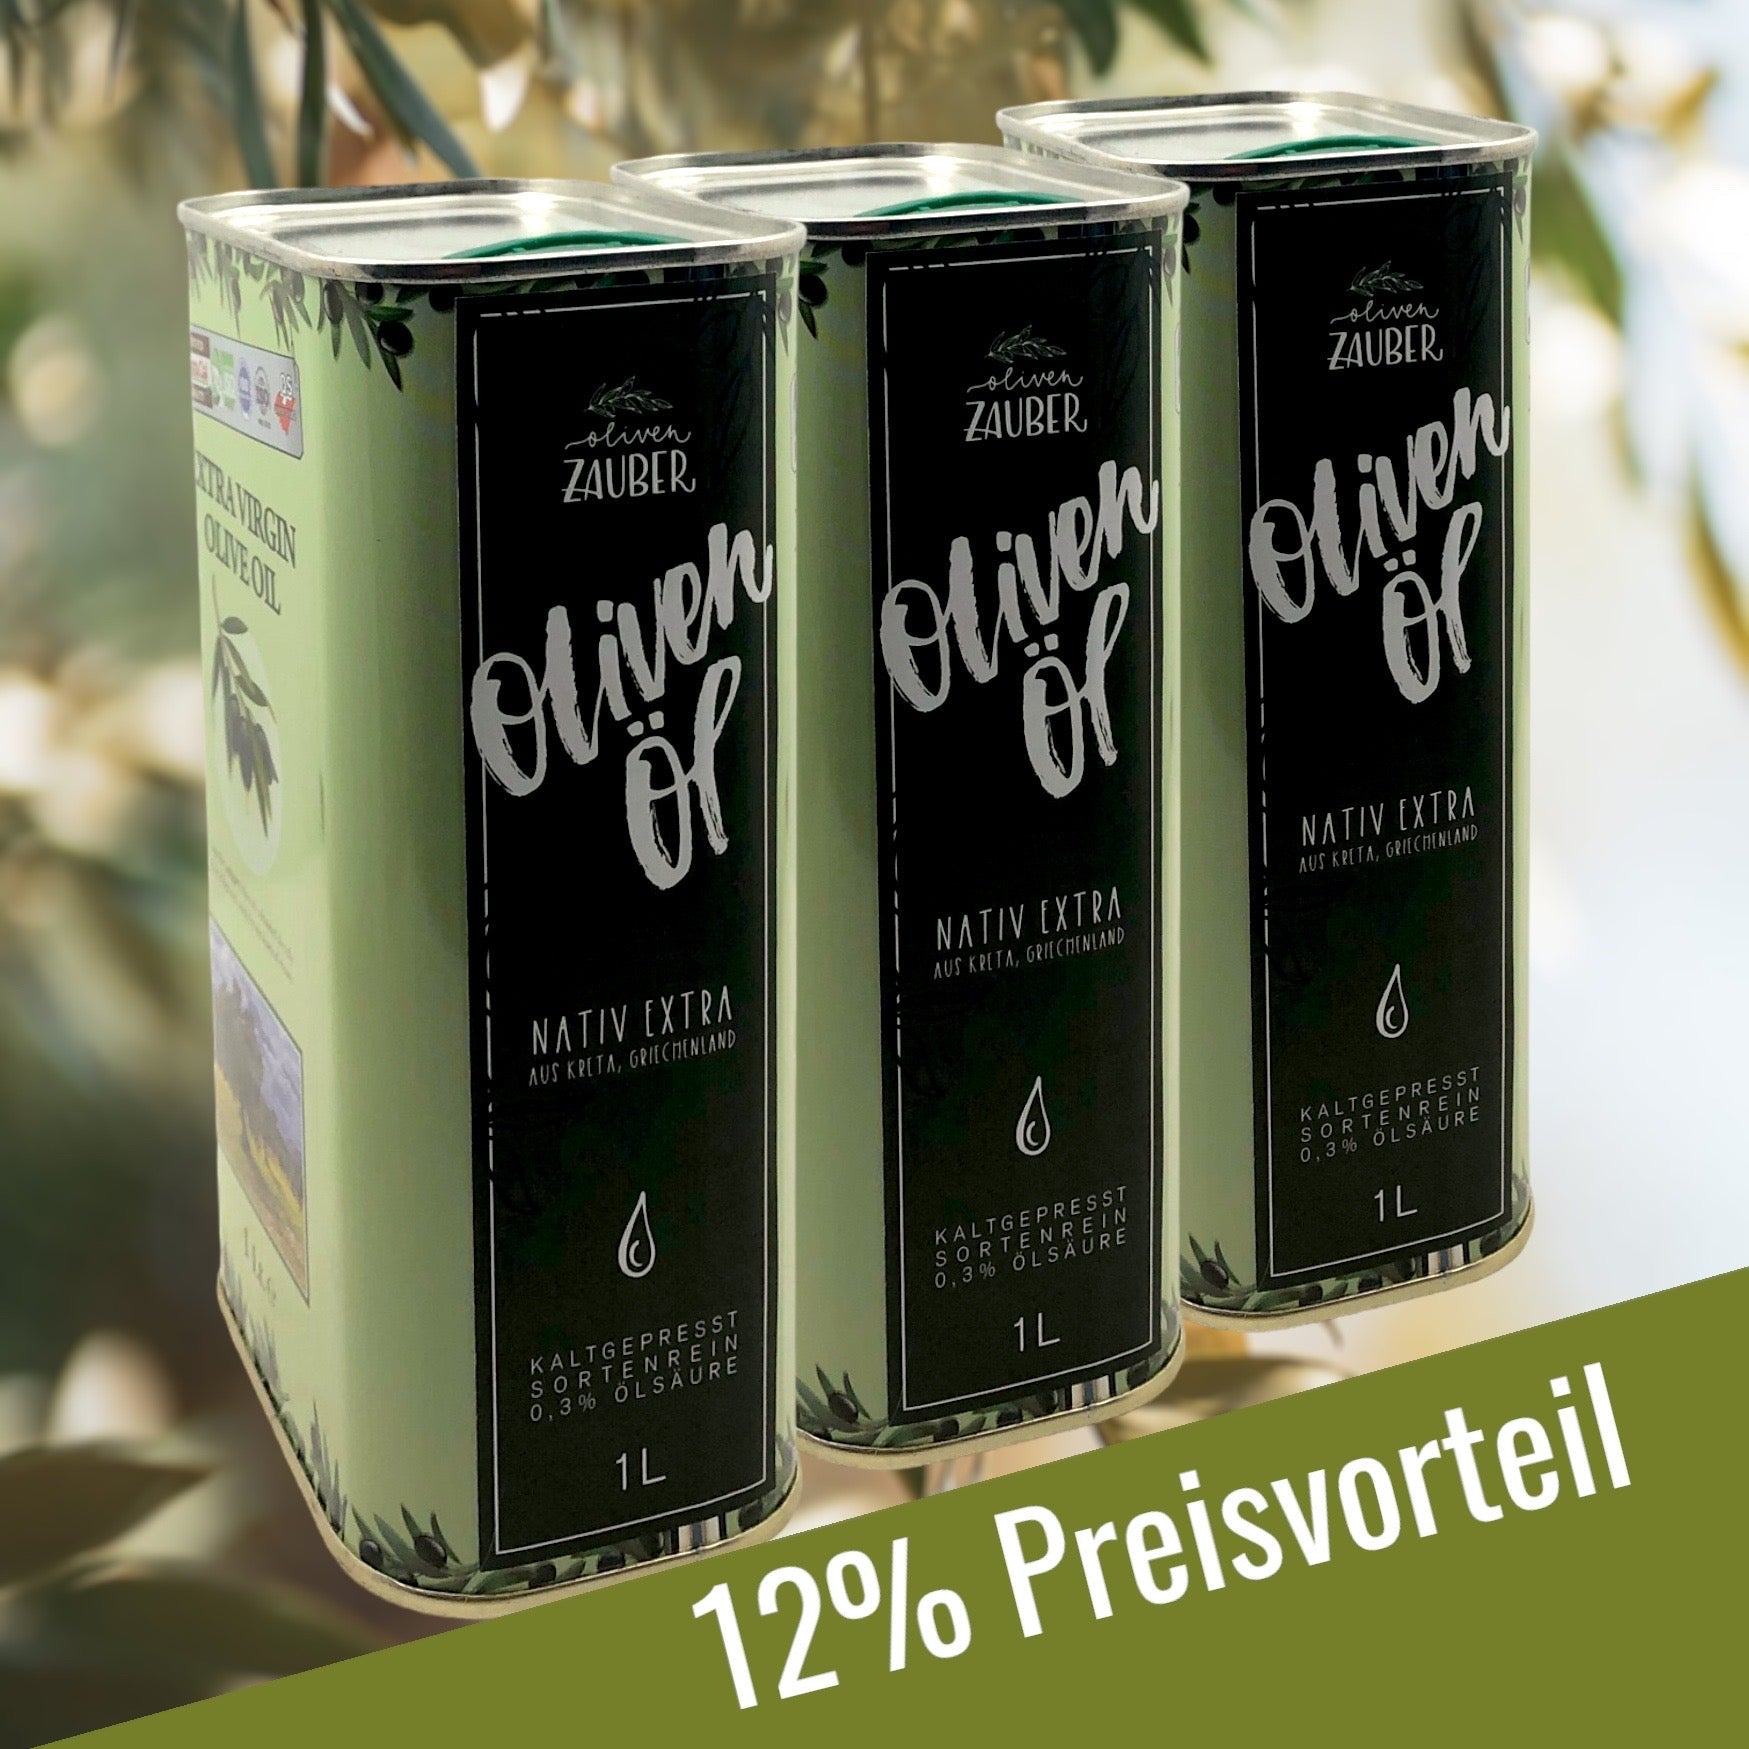 Griechisches Olivenöl nativ extra aus Kreta - Aktionspaket 3 Liter Dosen - OlivenZauber - Olivenöl neu erleben